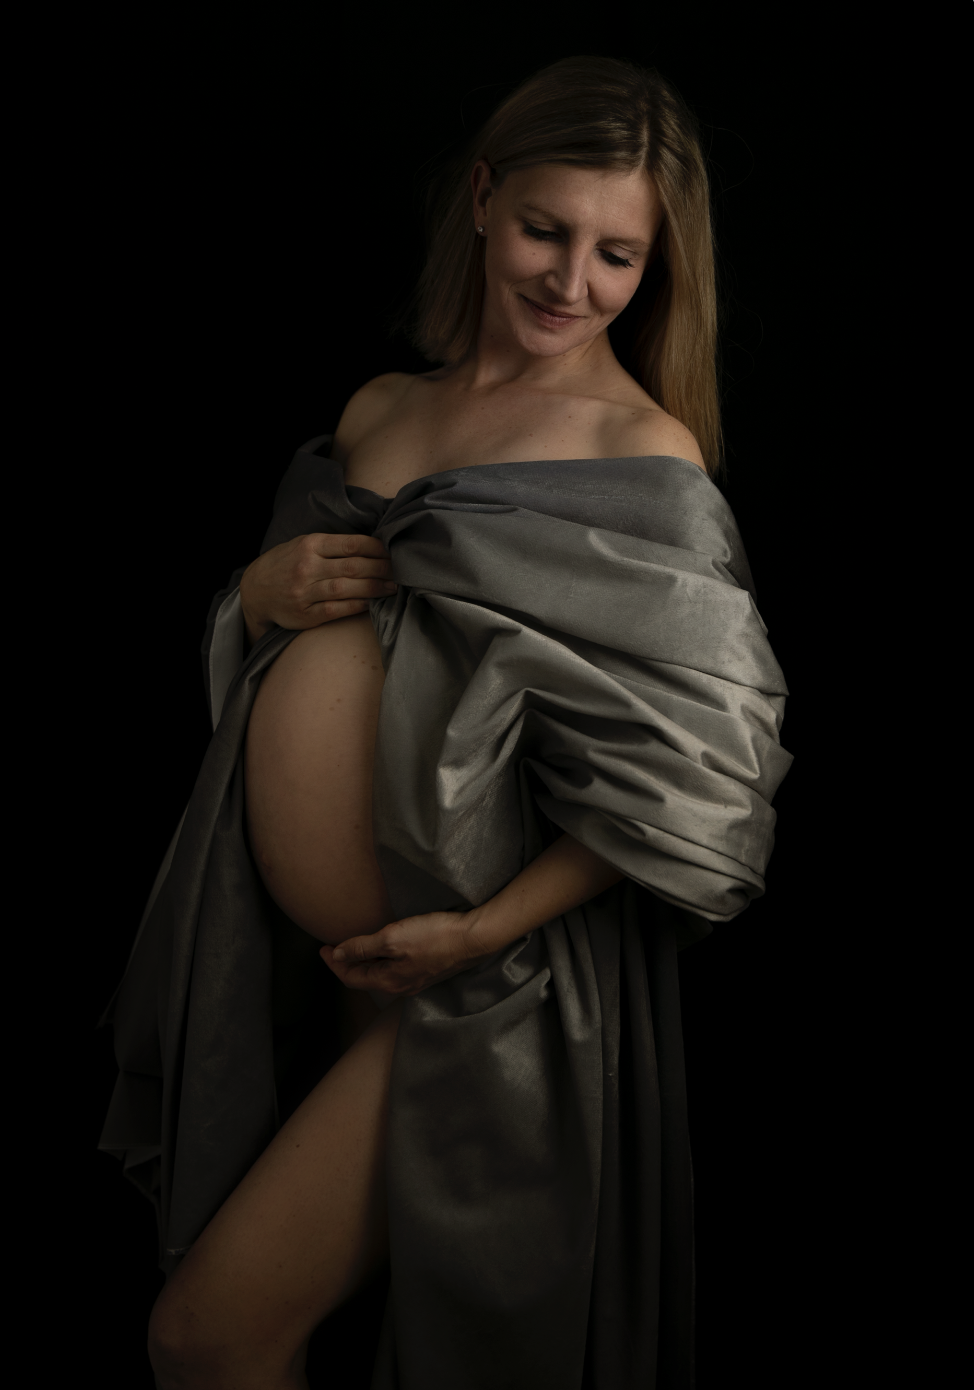 Bild zeigt eine Mutter mit Babybauch, die selbstsicher lächelt